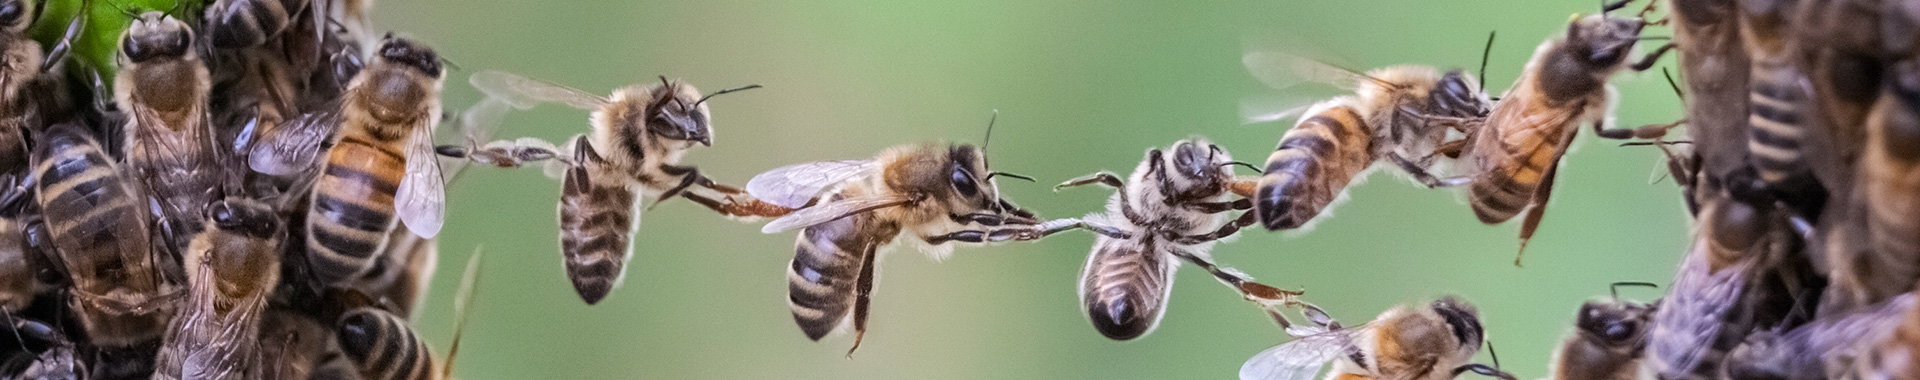 Bienen helfen sich durch Teamwork